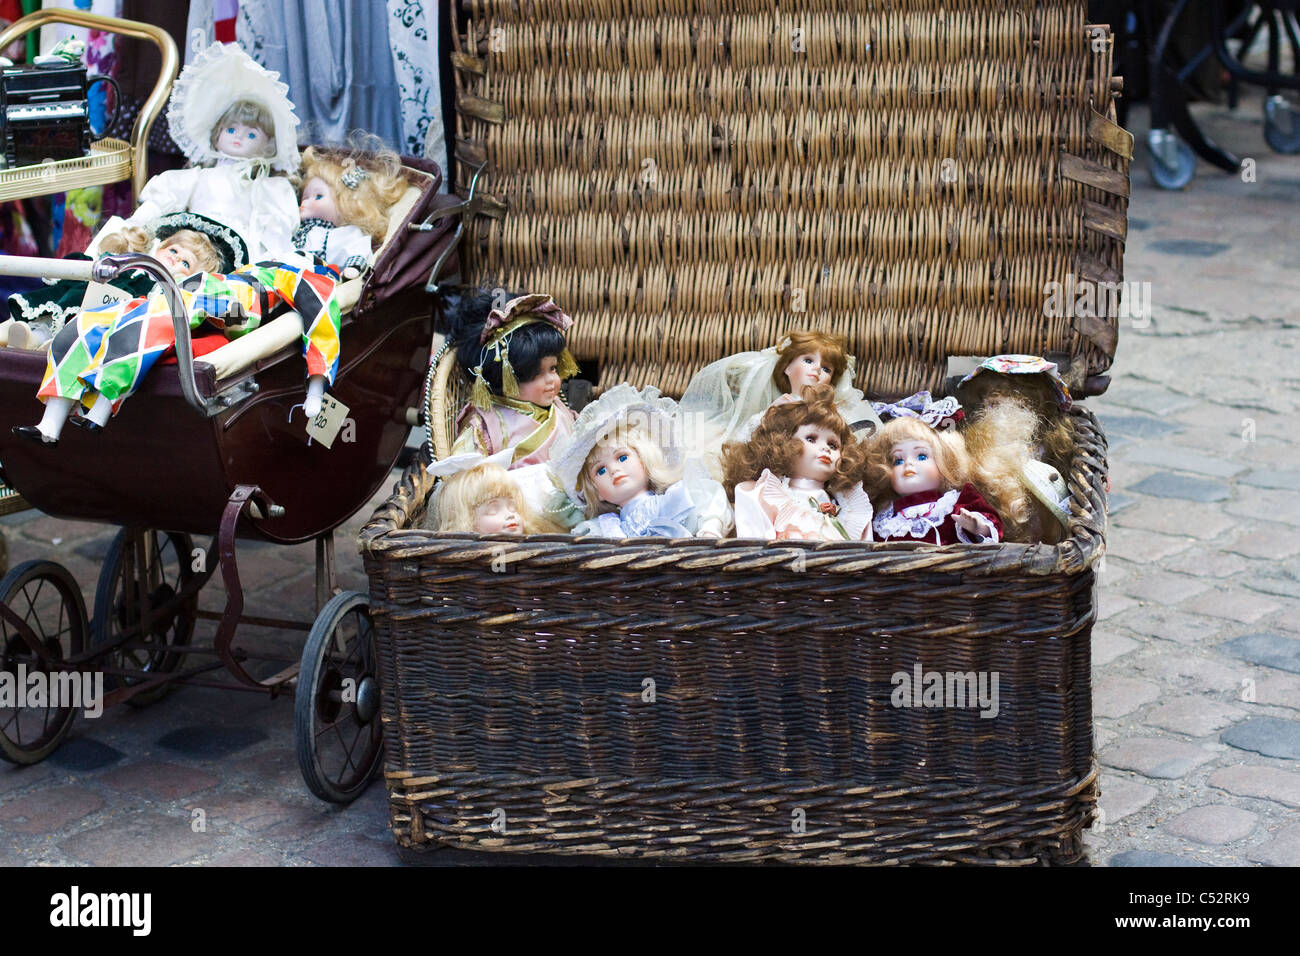 vintage dolls in a wicker basket Stock Photo